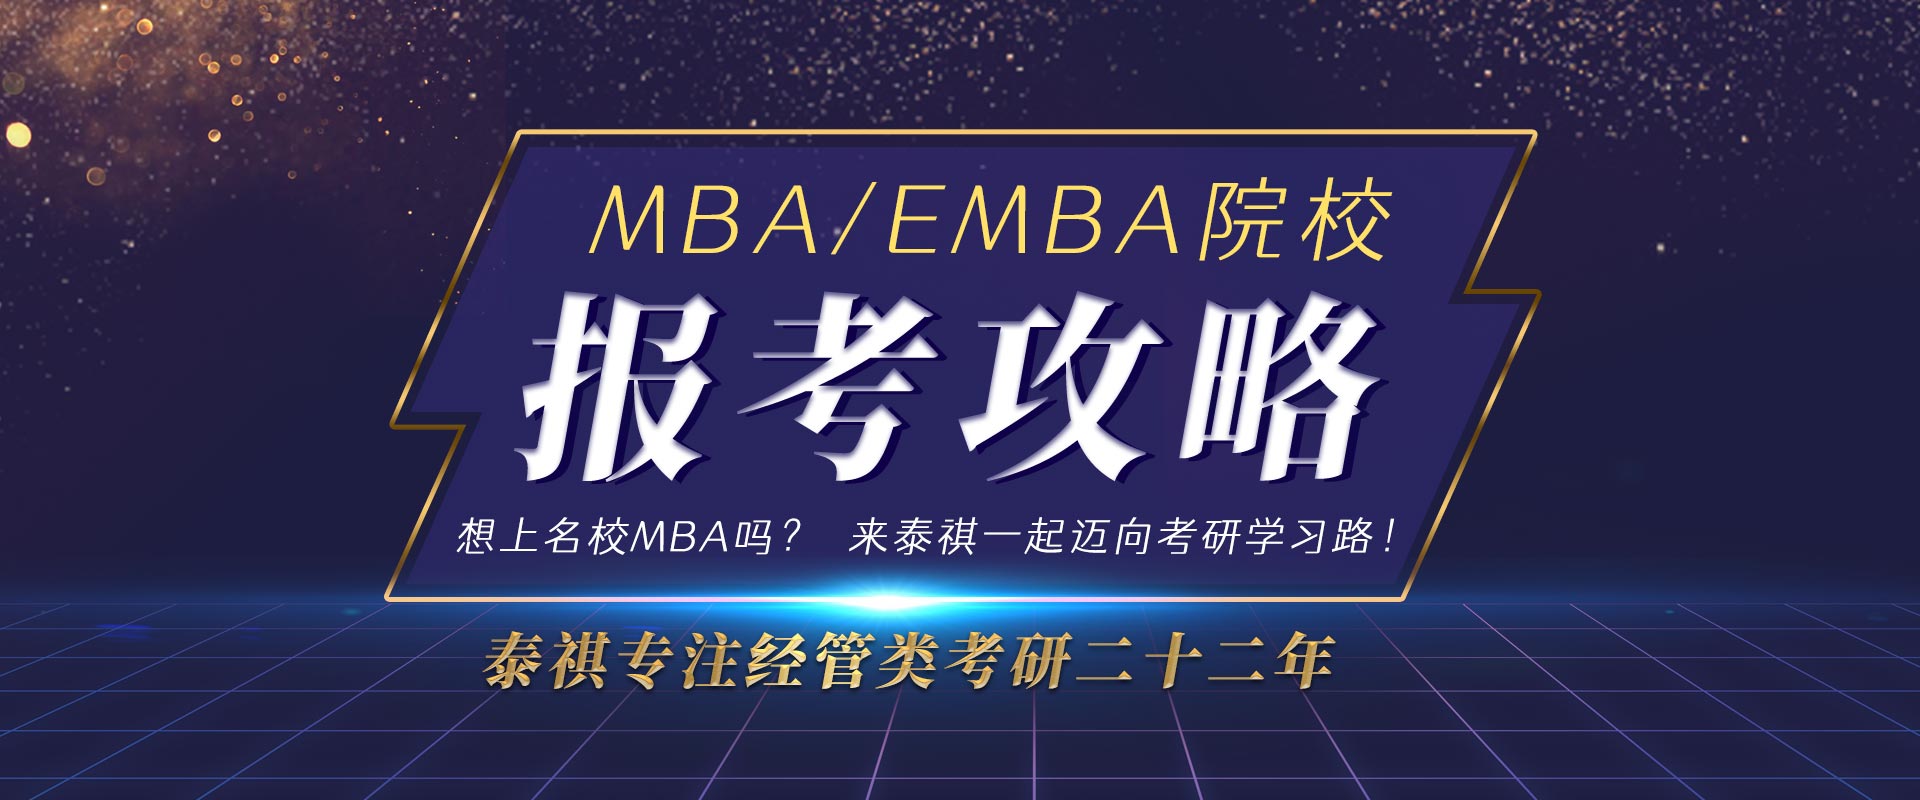 福州MBA/EMBA院校报考攻略